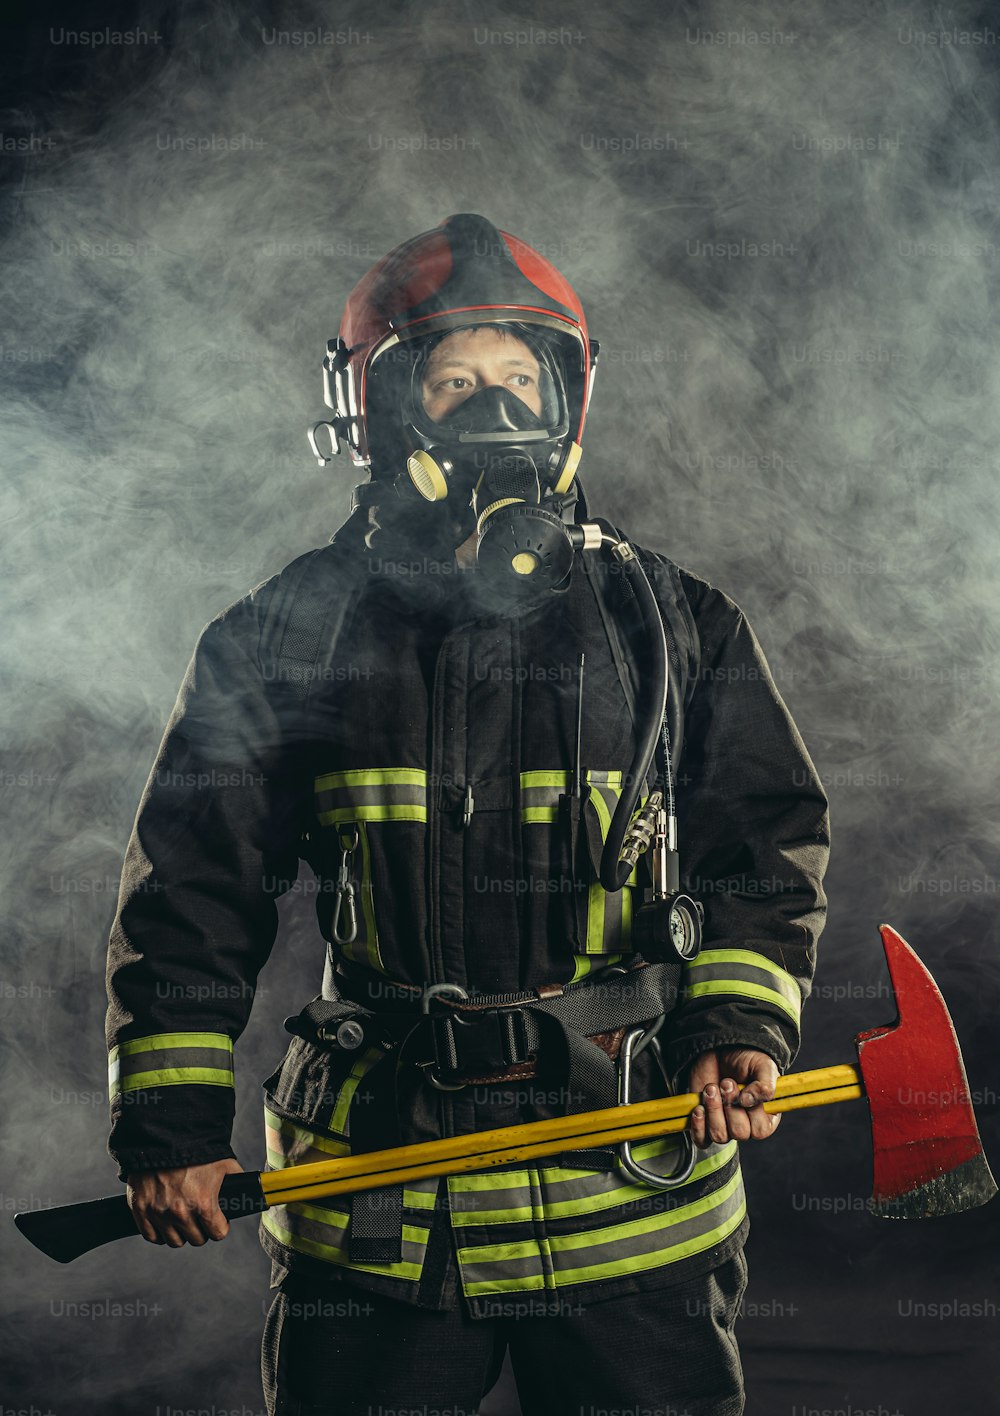 forte vigile del fuoco fiducioso che salva e protegge dal fuoco, indossa casco e tuta protettivi, lavora nella stazione dei pompieri